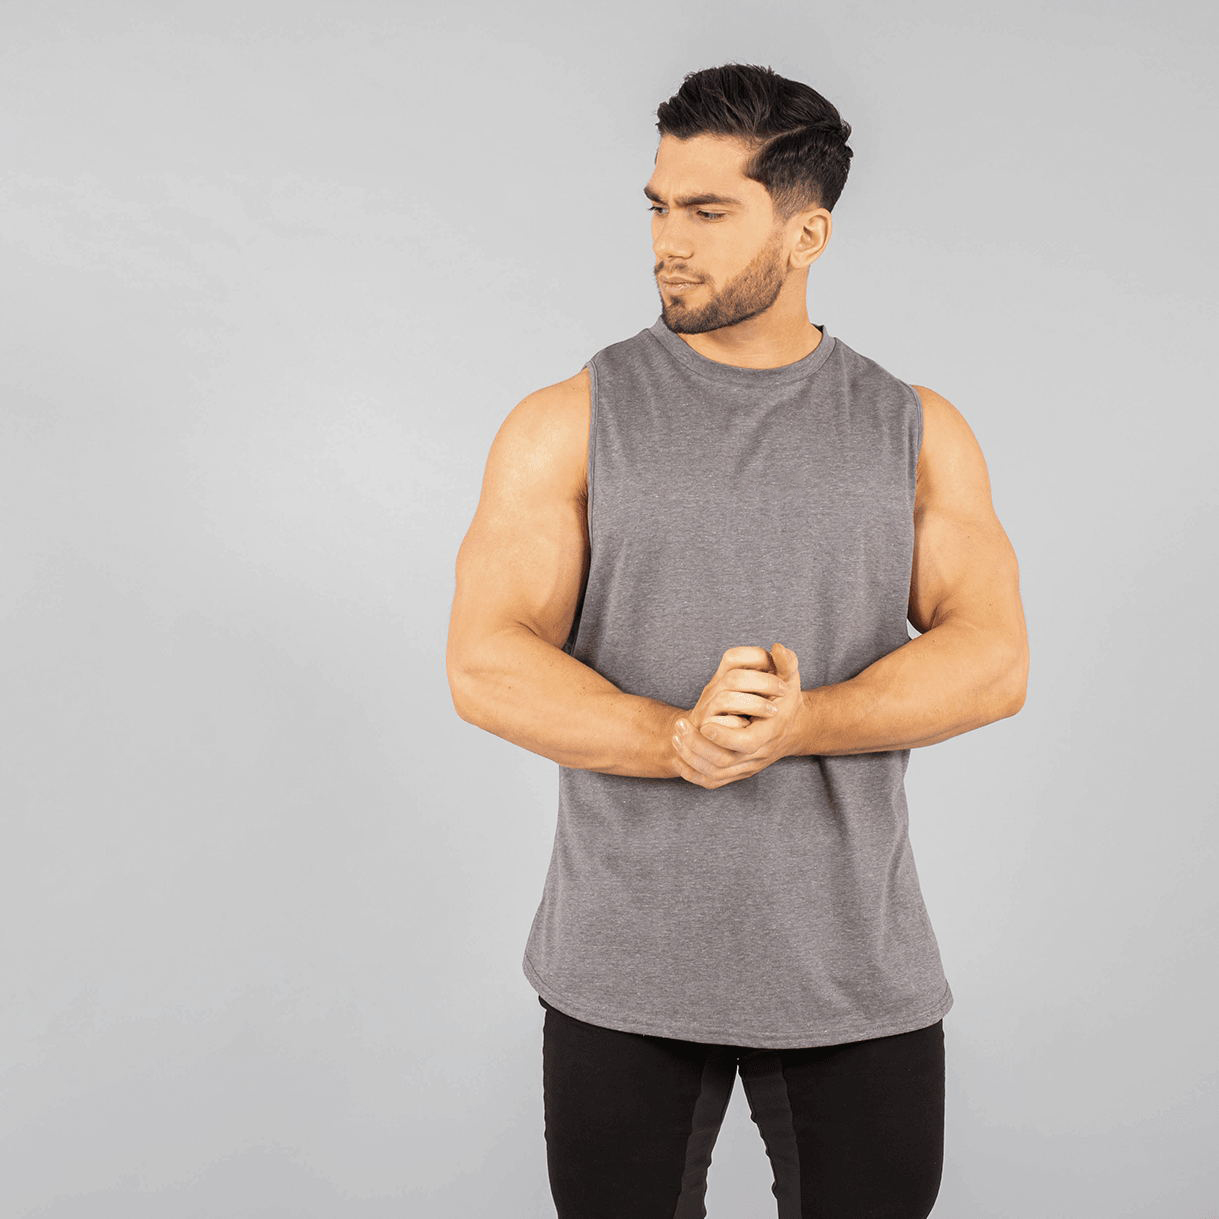 Men's Gym Workout Vest Muscle Bodybuilding Tank Top